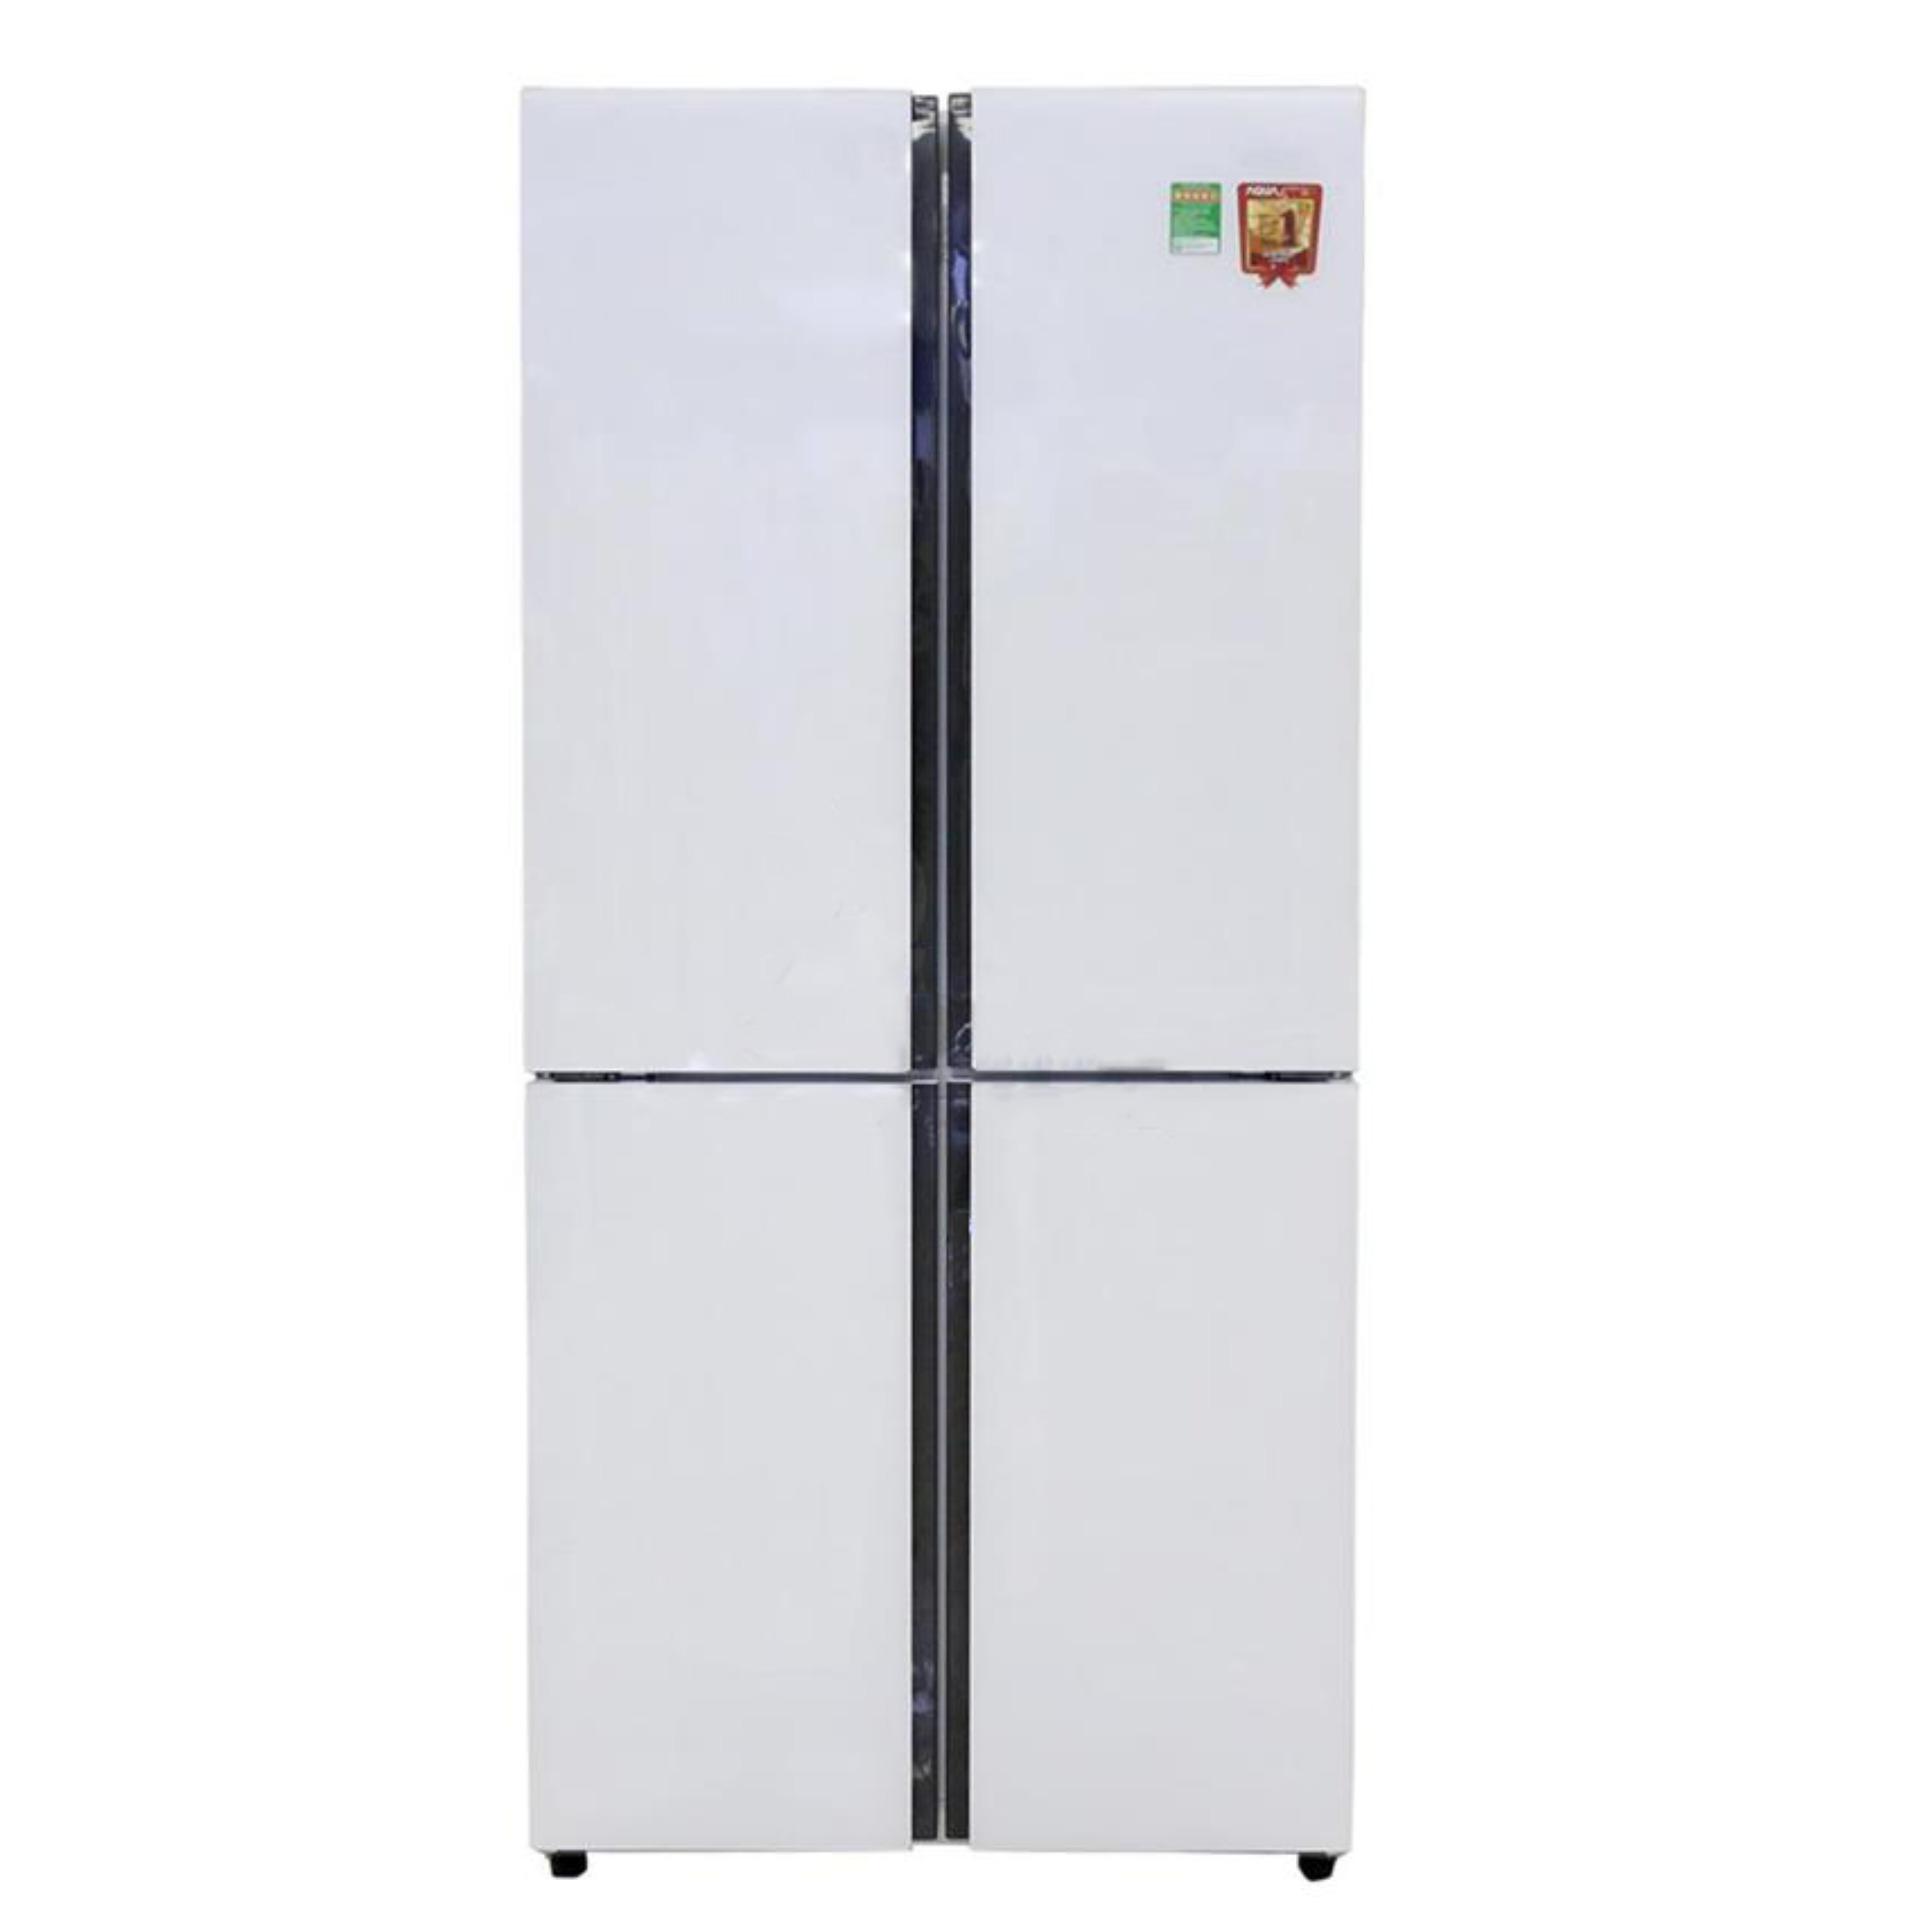 Tủ lạnh Aqua 4 cửa AQR-IG525AM(GW)